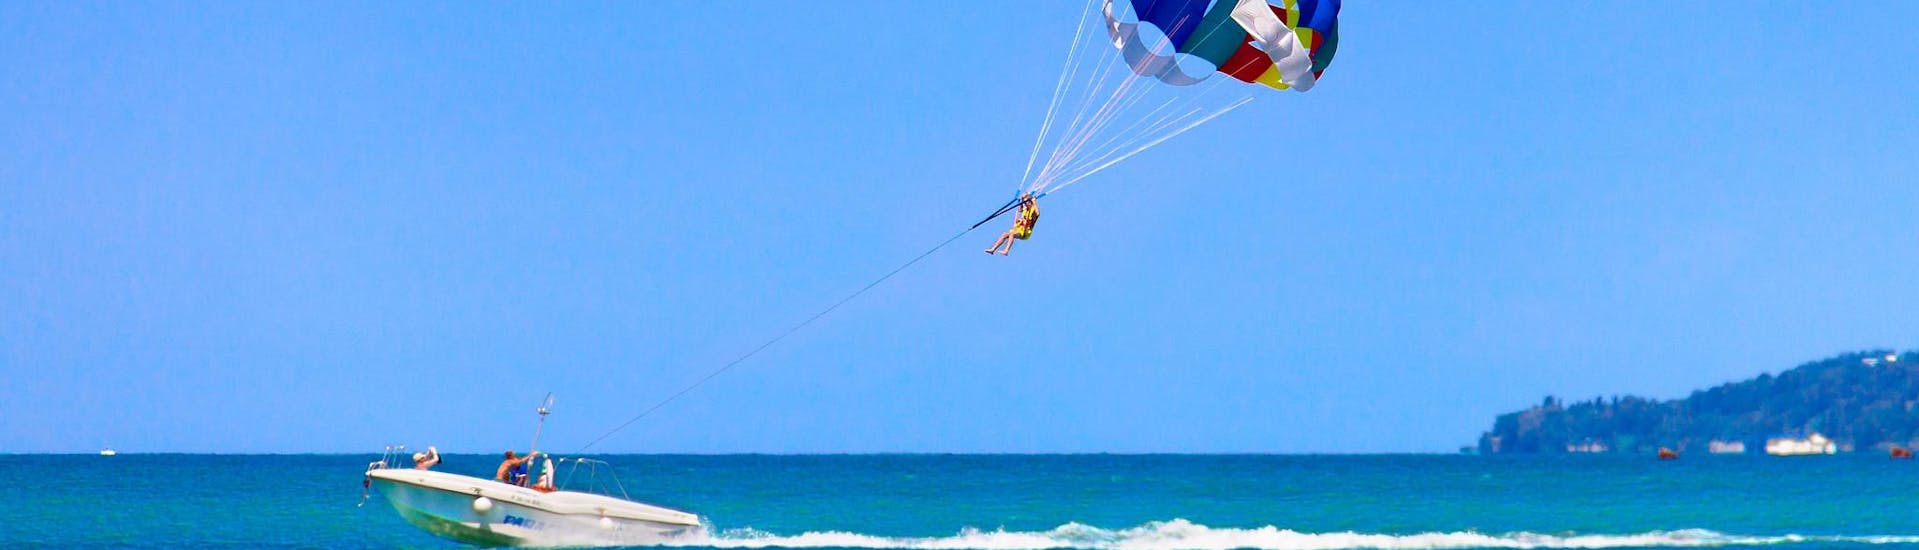 Une personne s'amusant lors d'une activité de parachute ascensionnel.